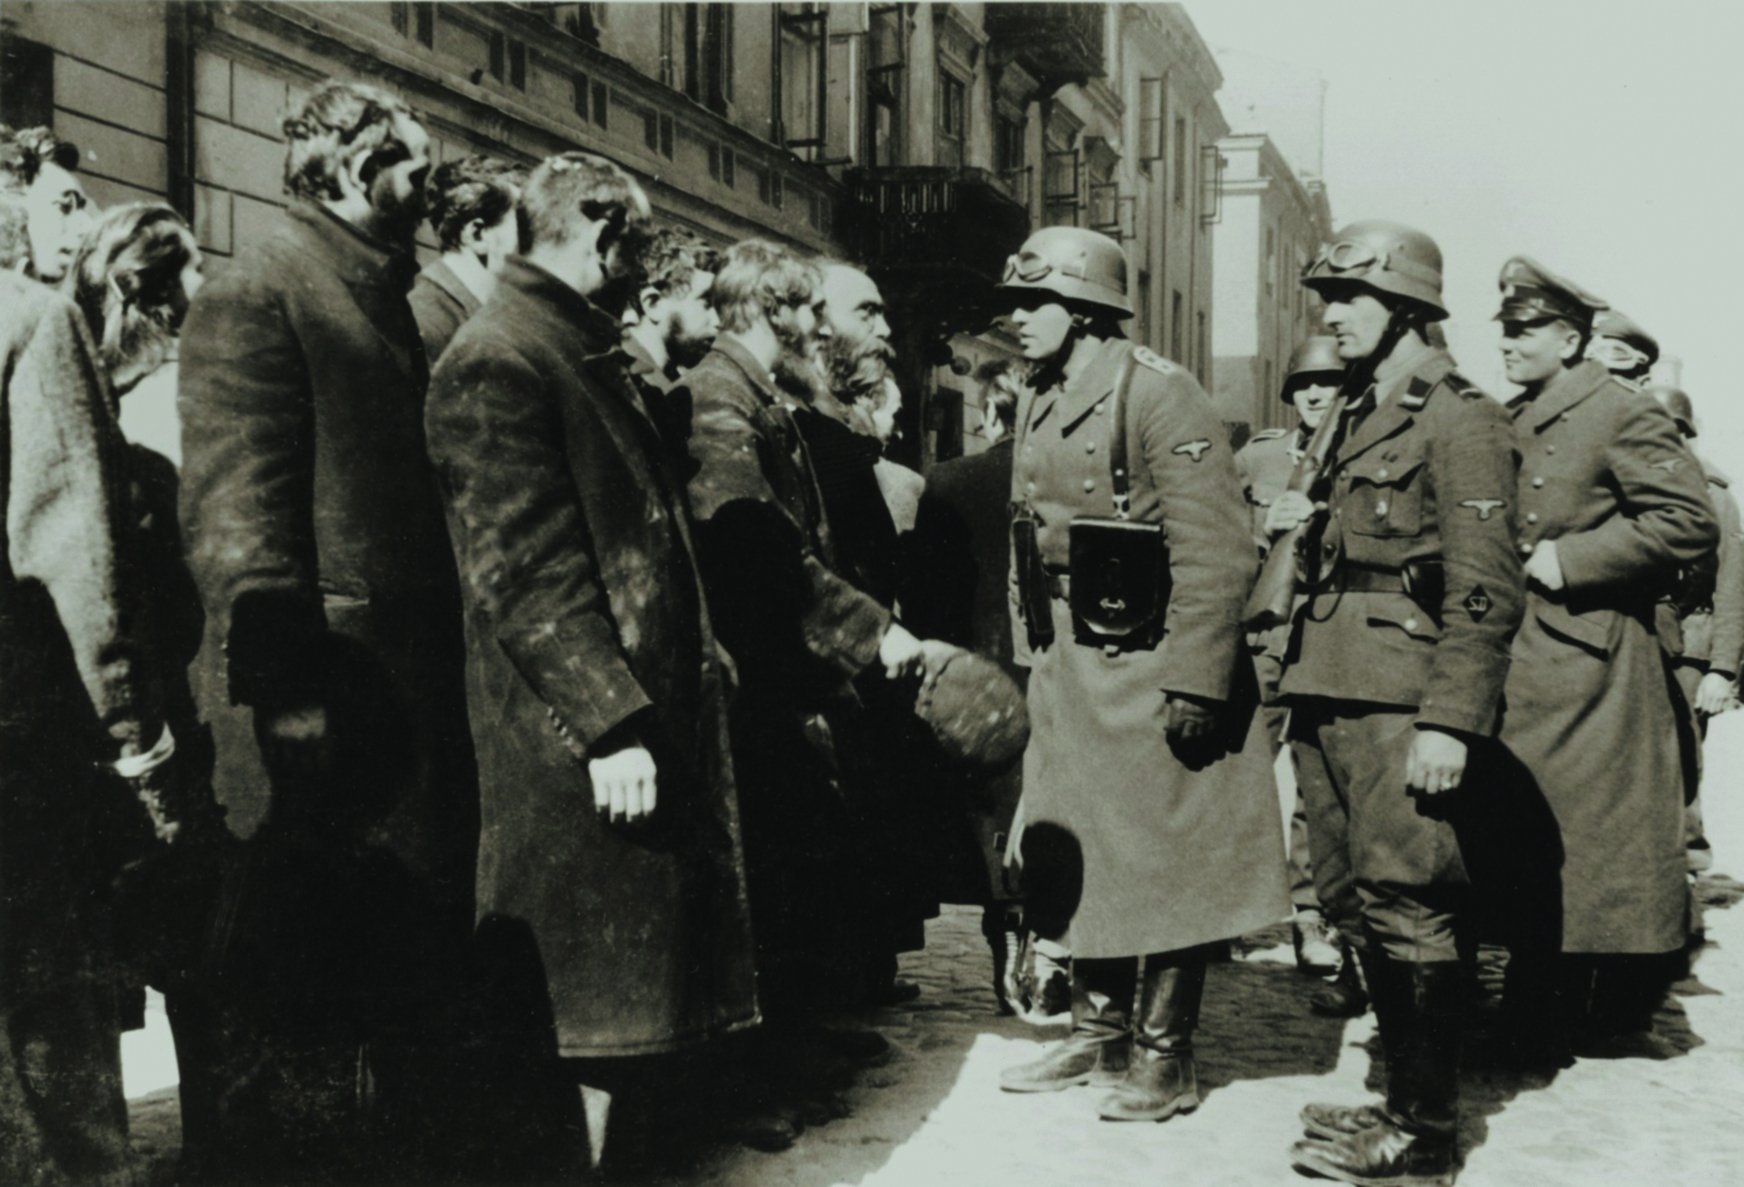 Fotografia em preto e branco. Sobre uma via, à direita, alguns homens vestindo fardas e capacetes. Na frente deles, à esquerda, um grupo de homens reunidos, vestindo casacos.